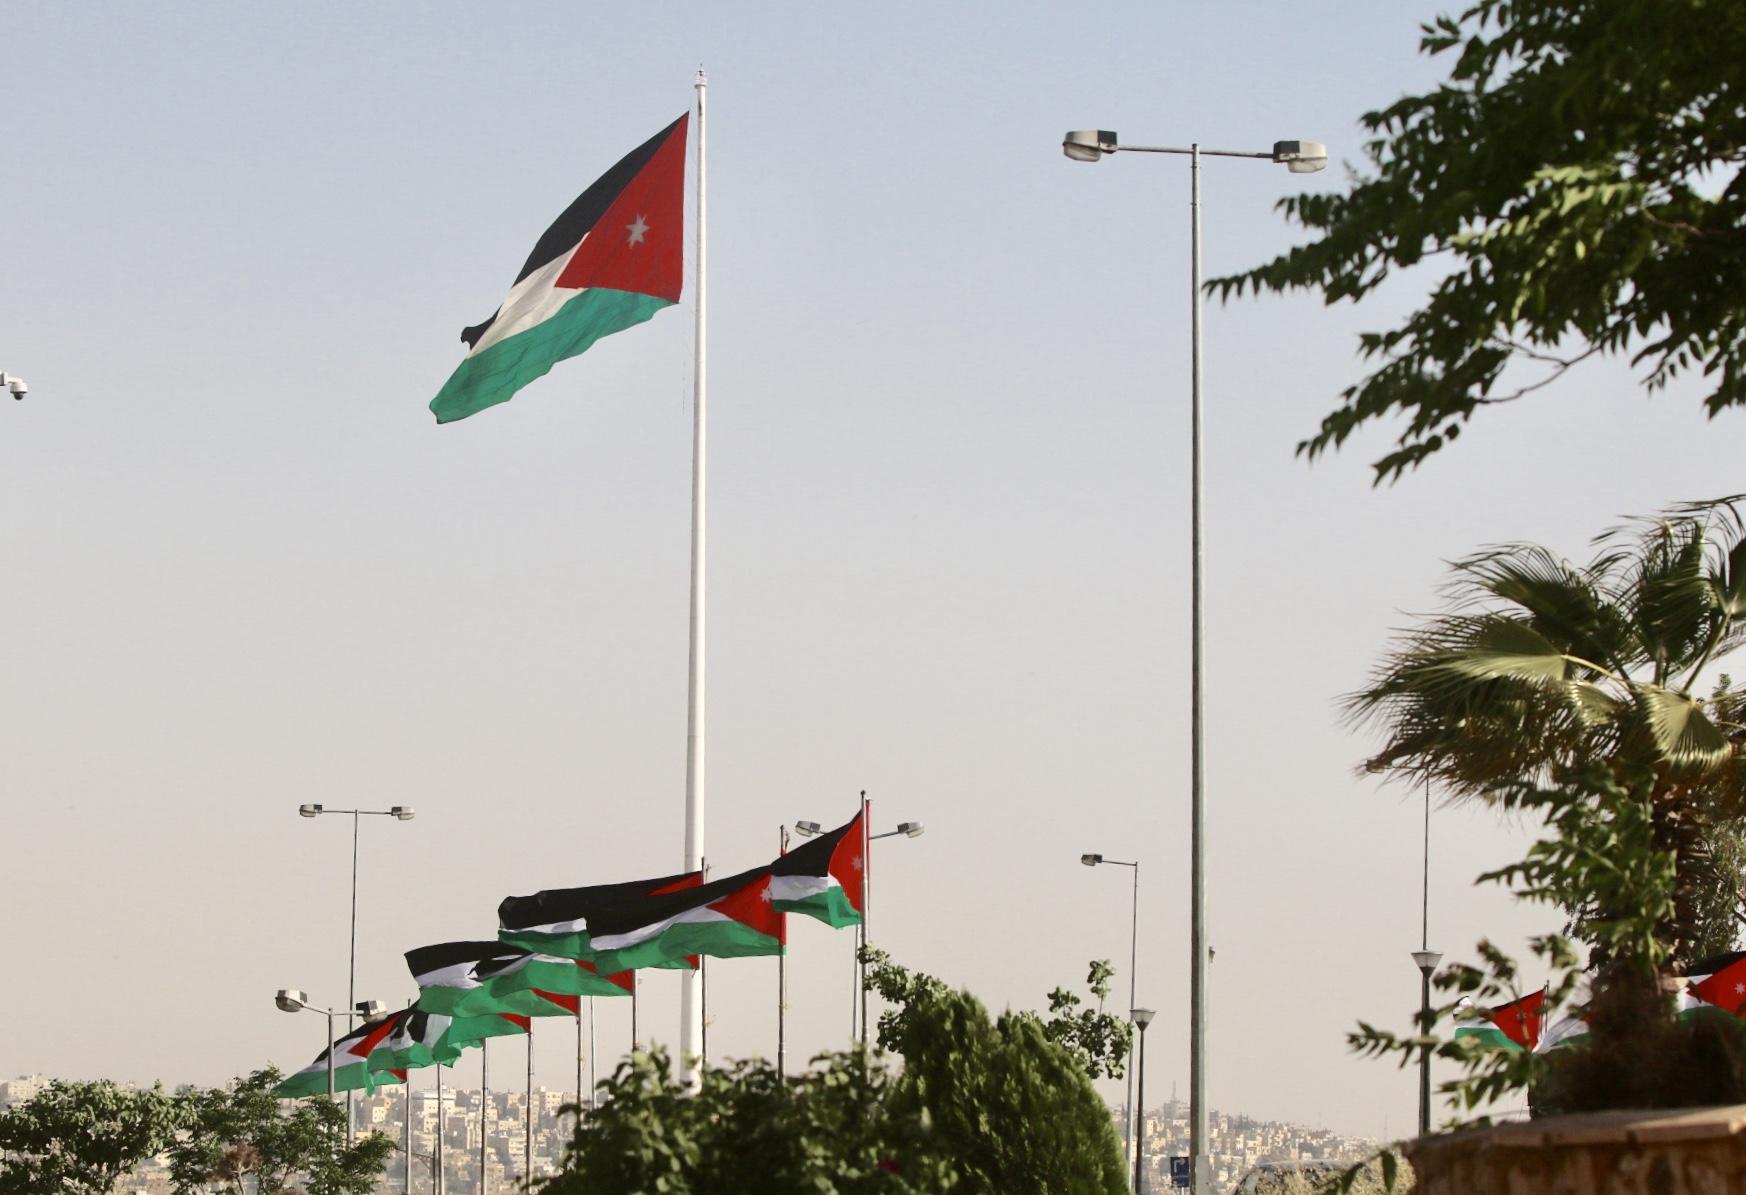 أعلام المملكة الأردنية الهاشمية. صلاح ملكاوي / المملكة